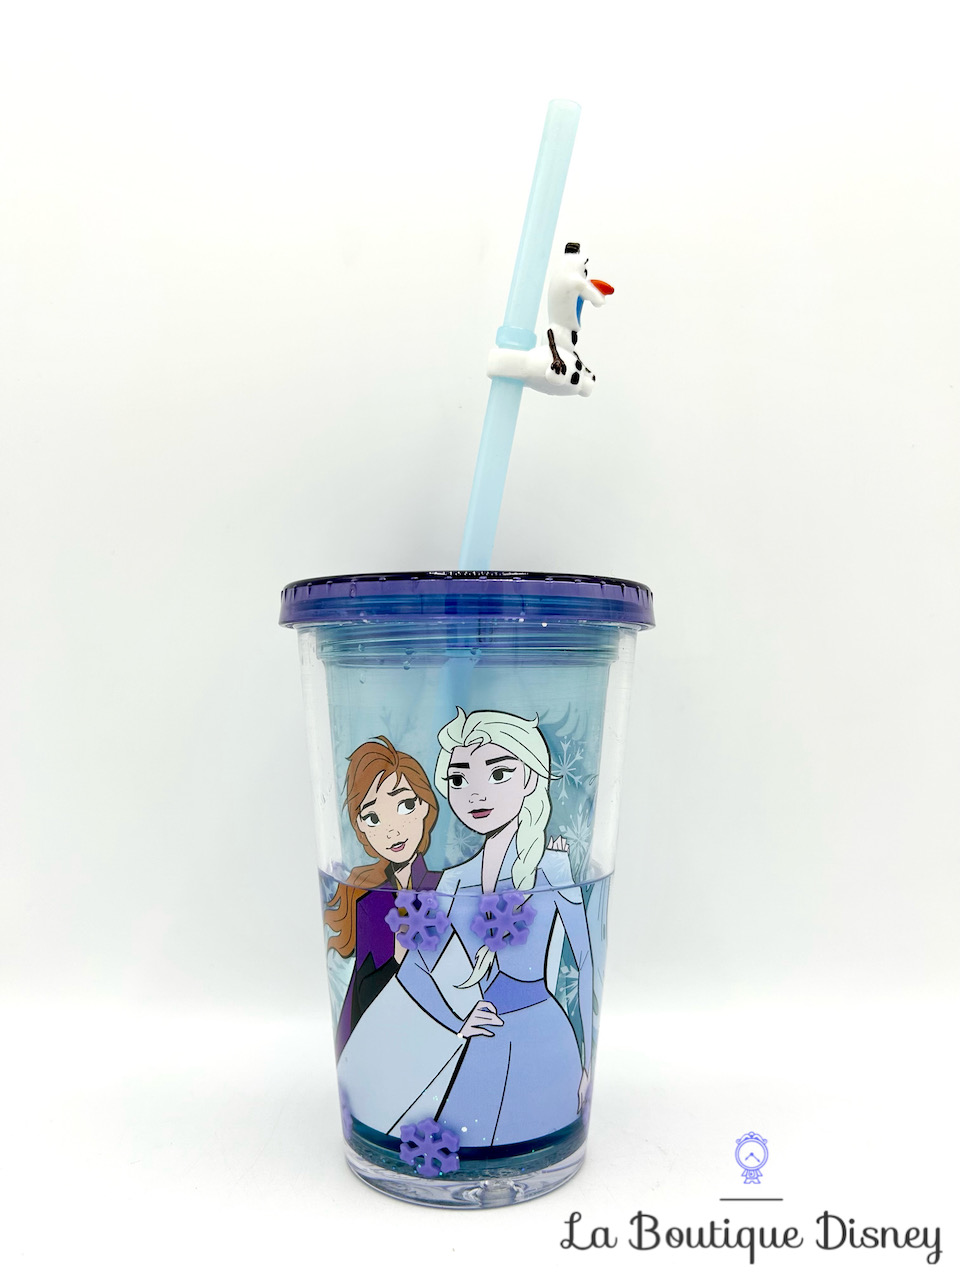 Gobelet paille Anna Elsa Olaf La reine des neiges 2 Disney Parks 2019 verre plastique